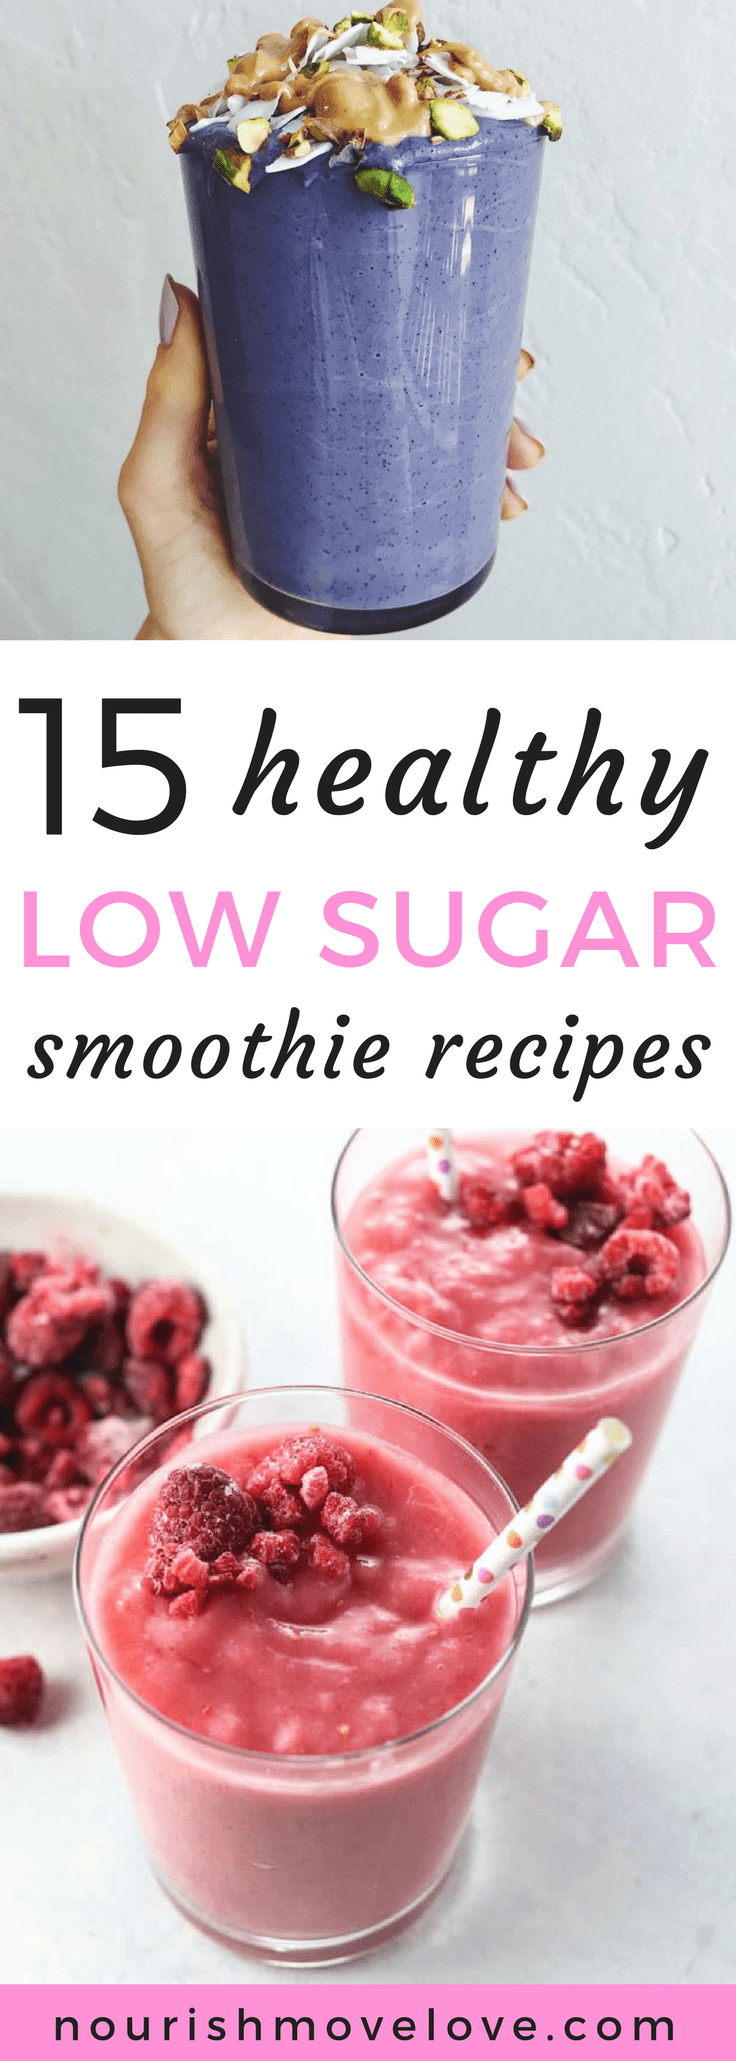 15 Health Low Sugar Smoothie Recipes | www.nourishmovelove.com